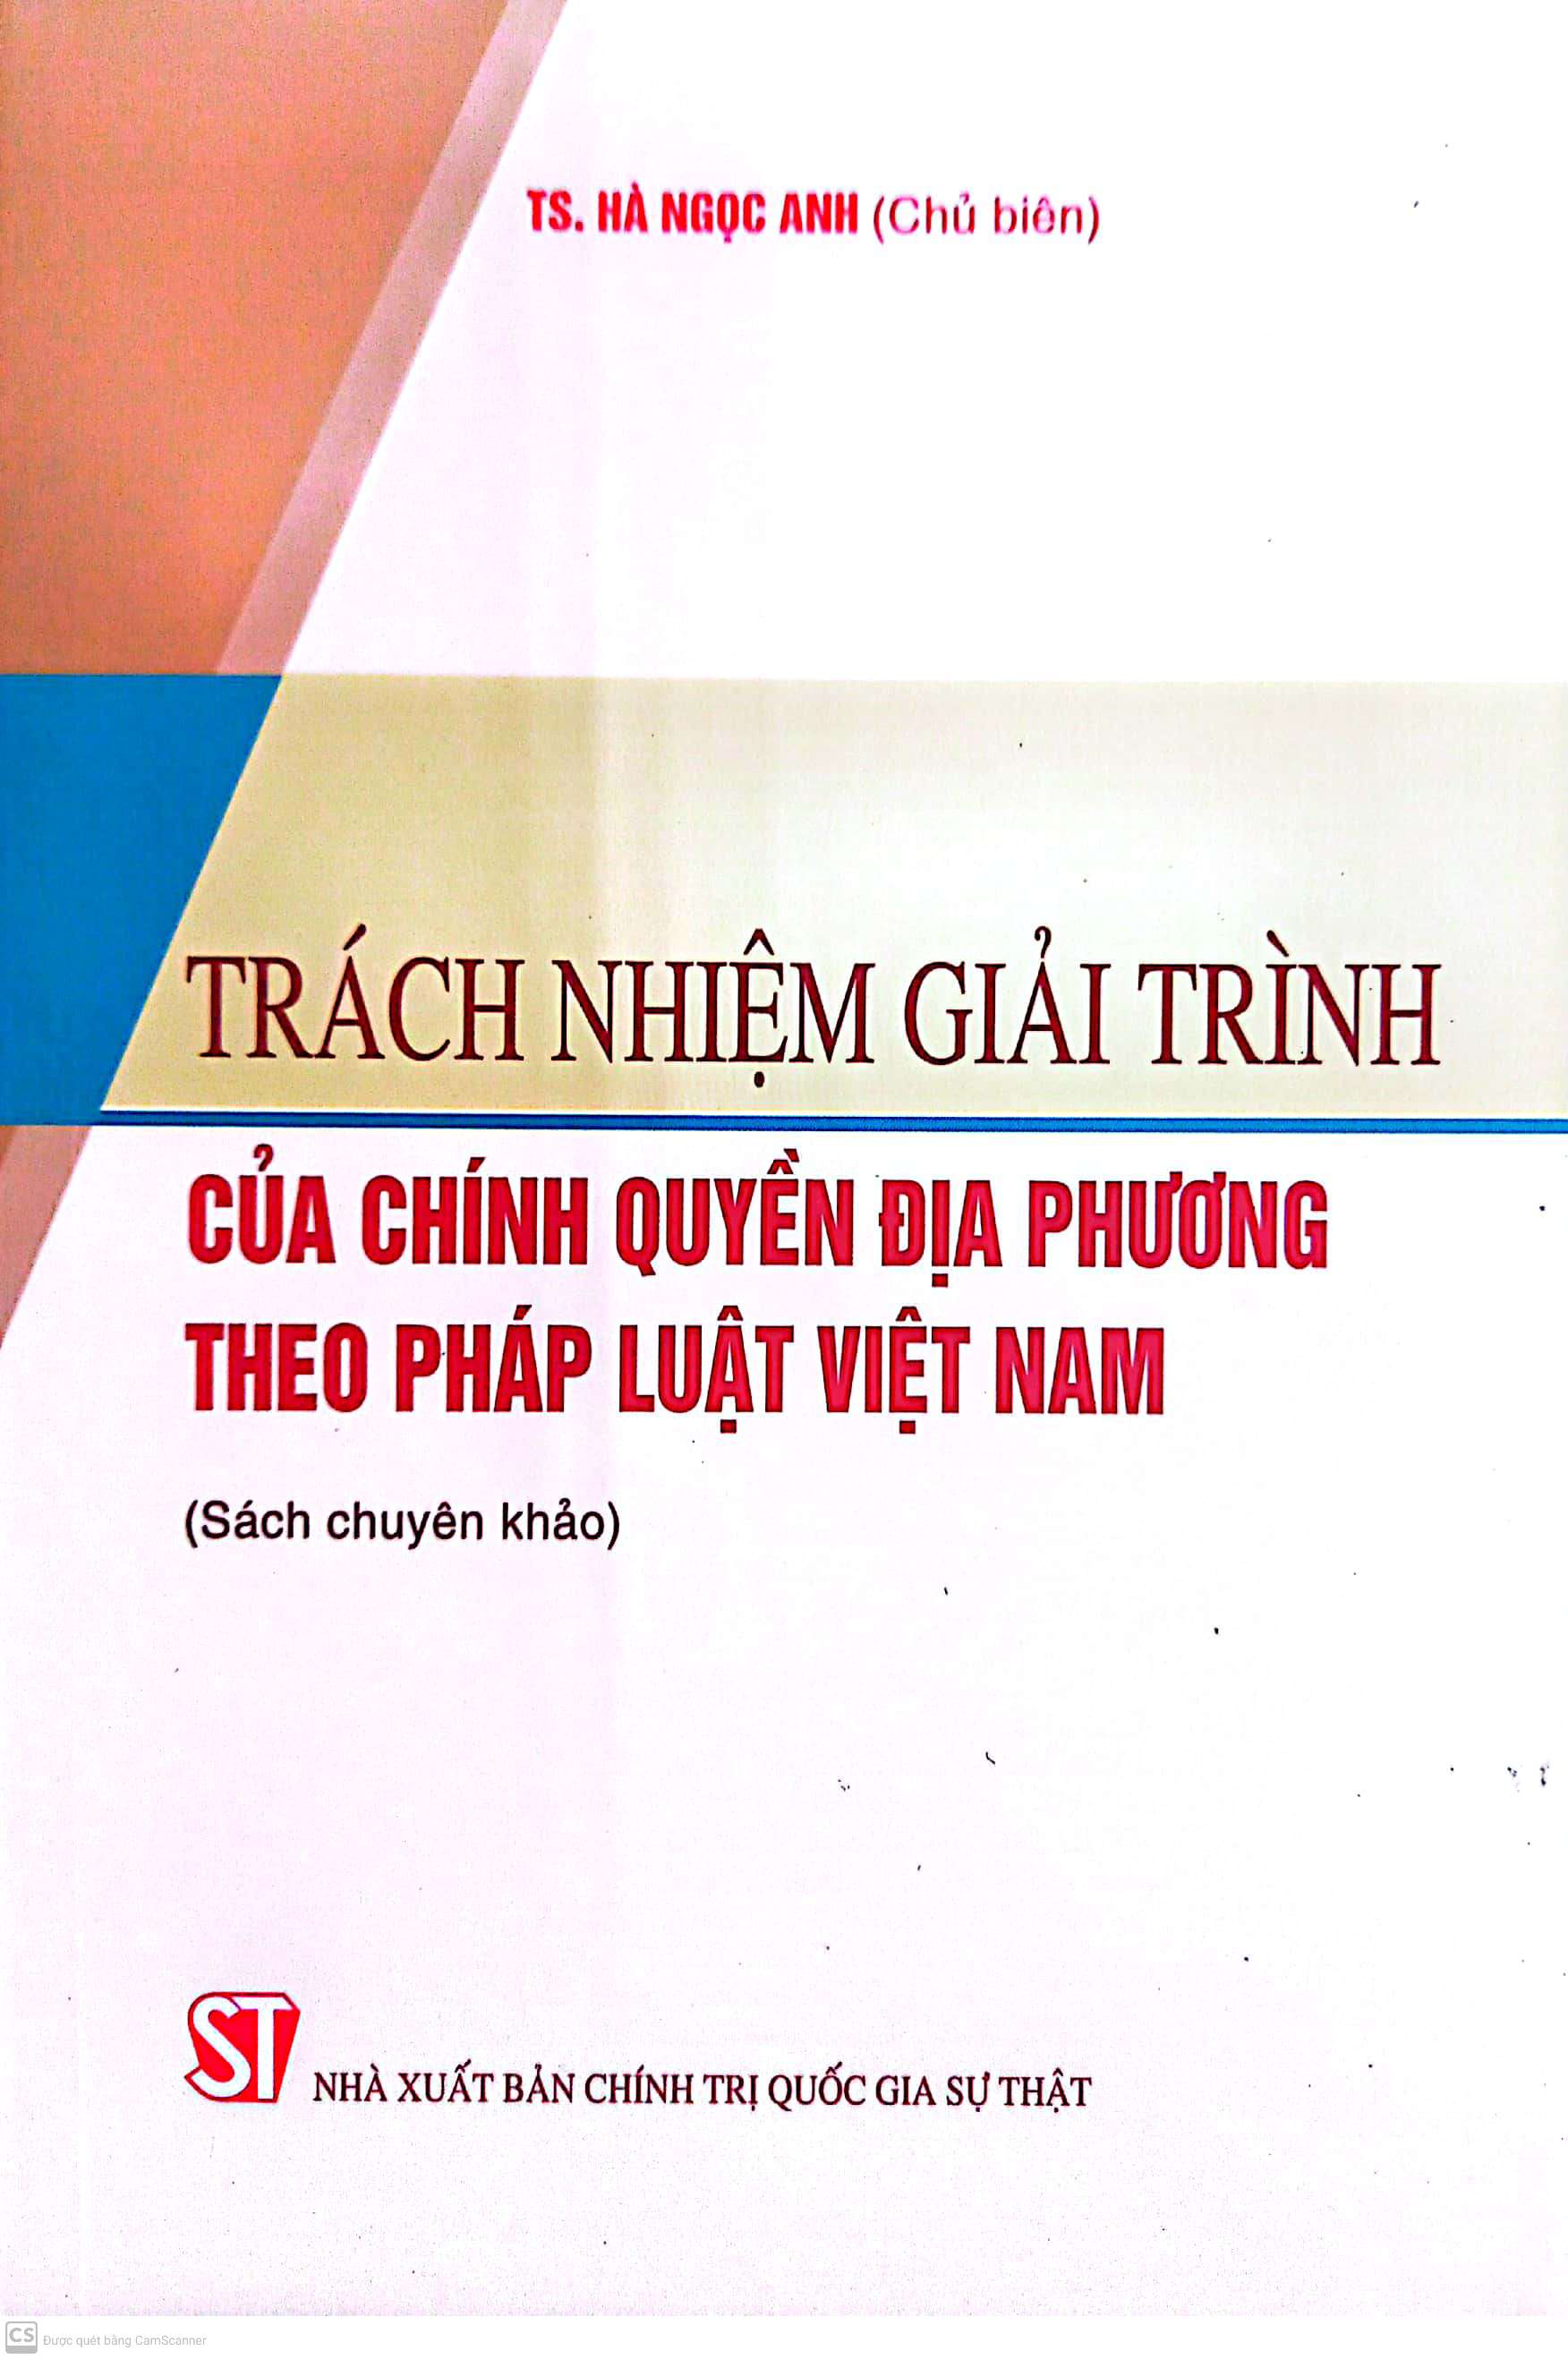 Trách nhiệm giải trình của chính quyền địa phương theo pháp luật Việt Nam (Sách chuyên khảo)